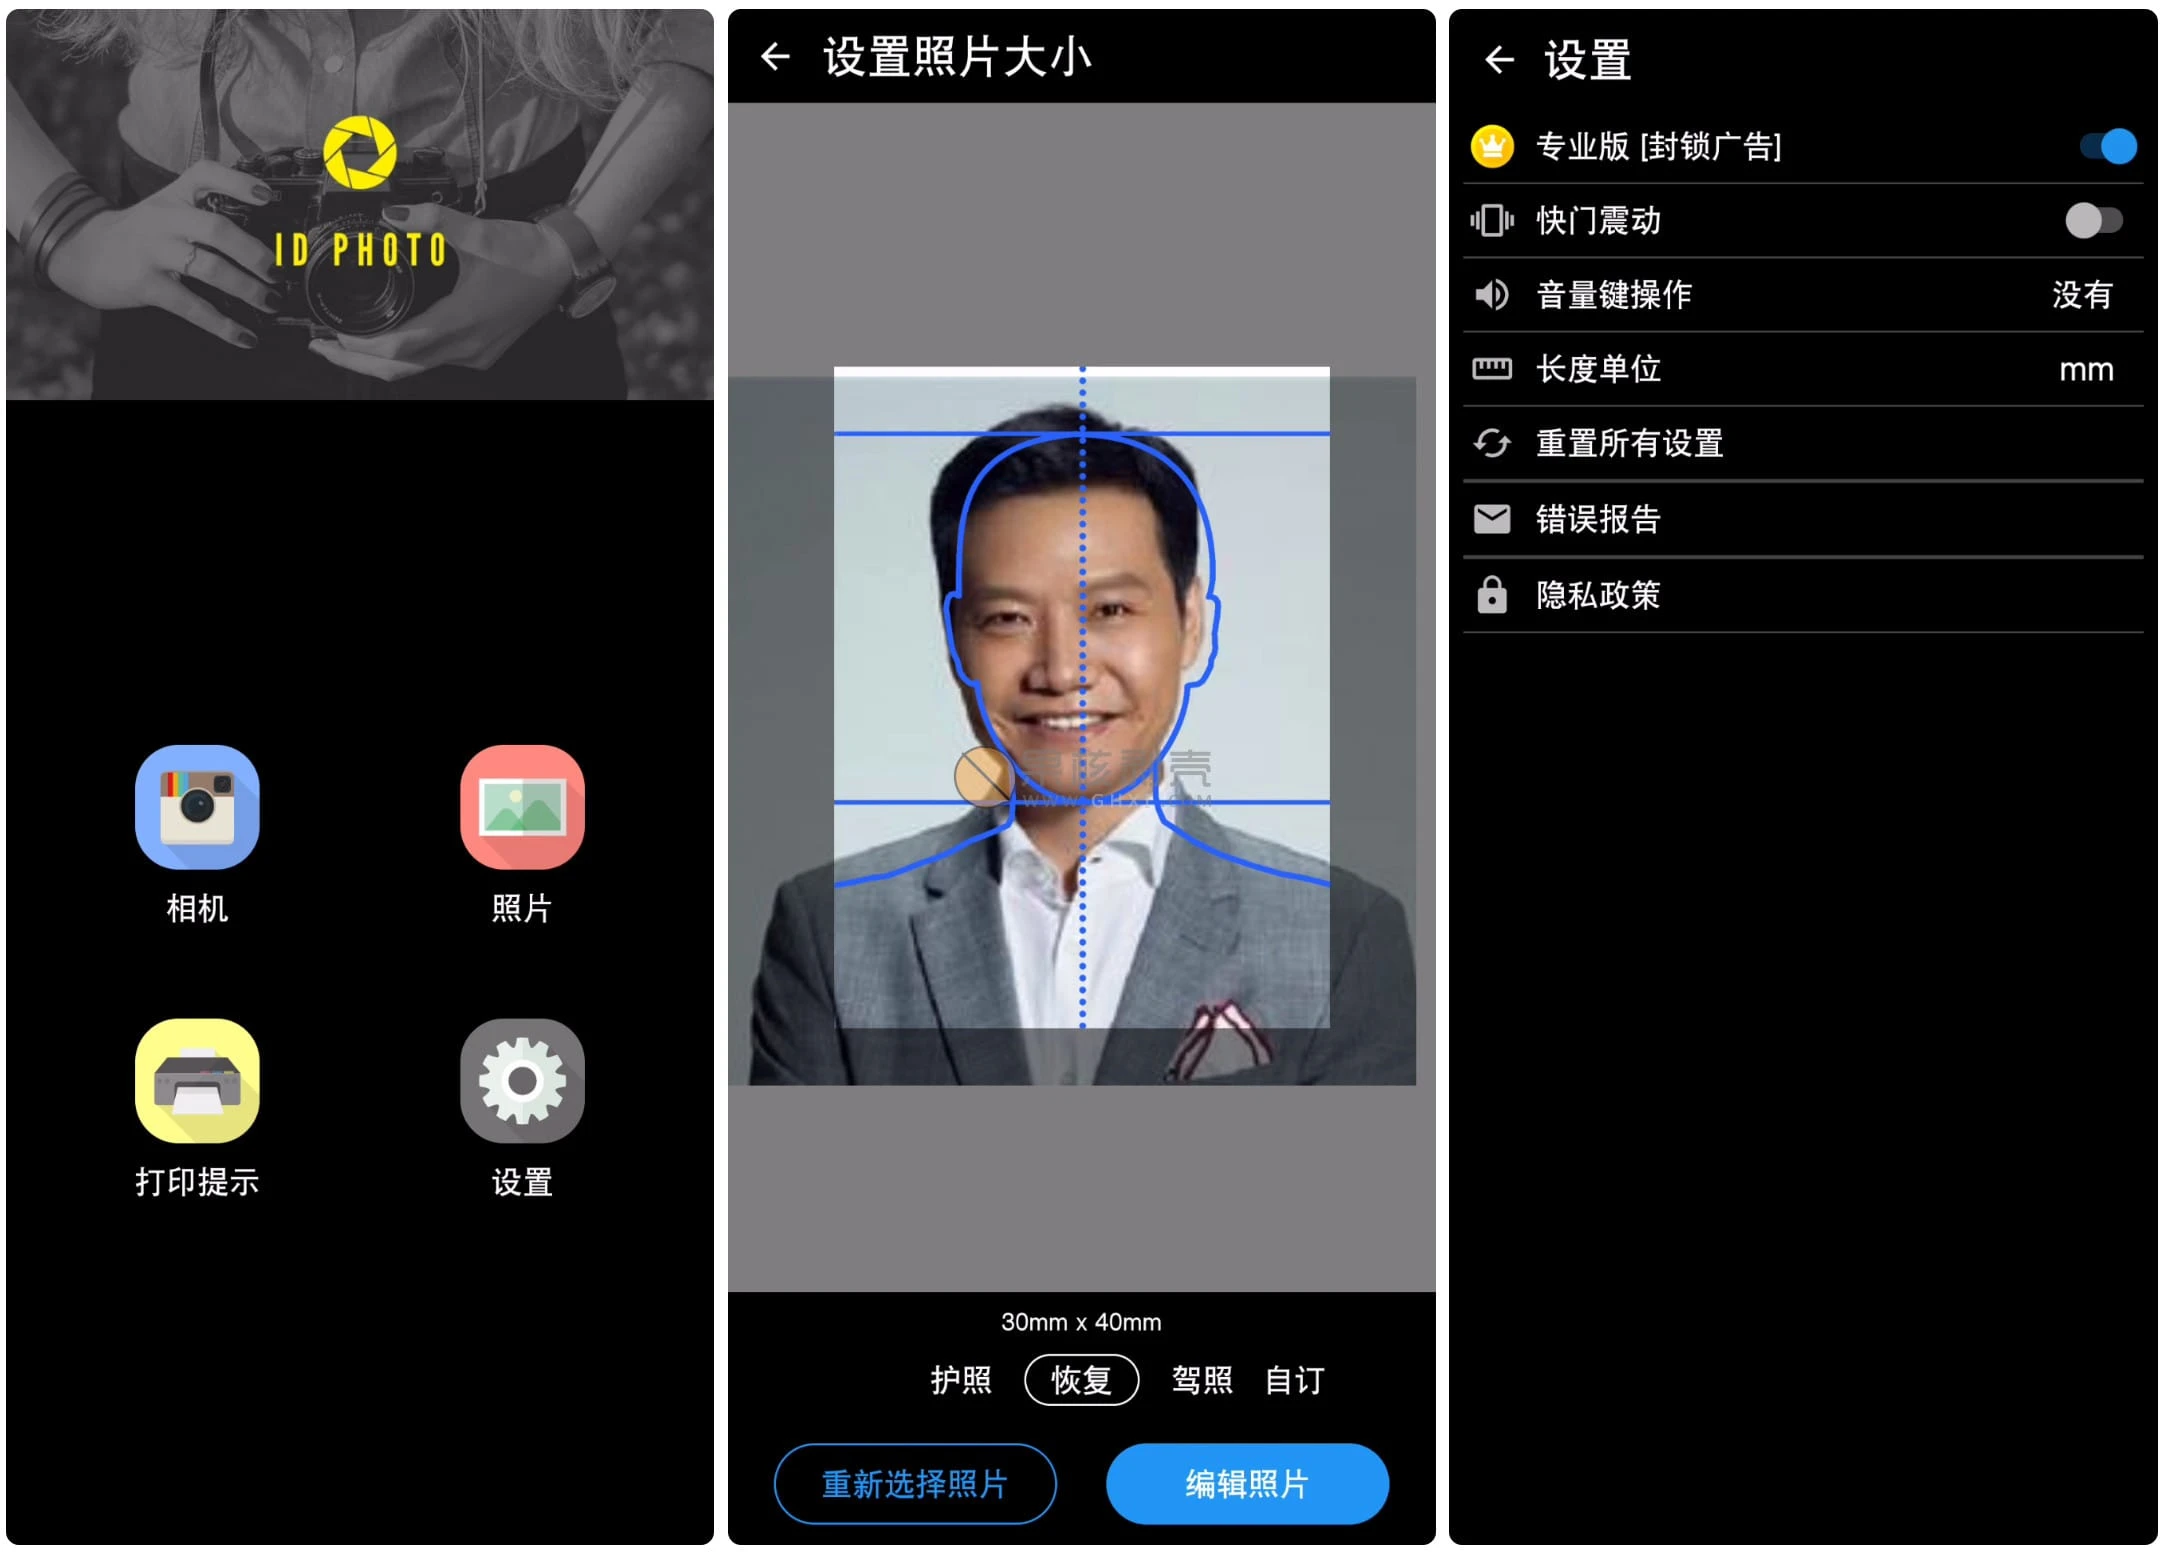 Android ID Photo(证件照片) v8.6.0 高级版